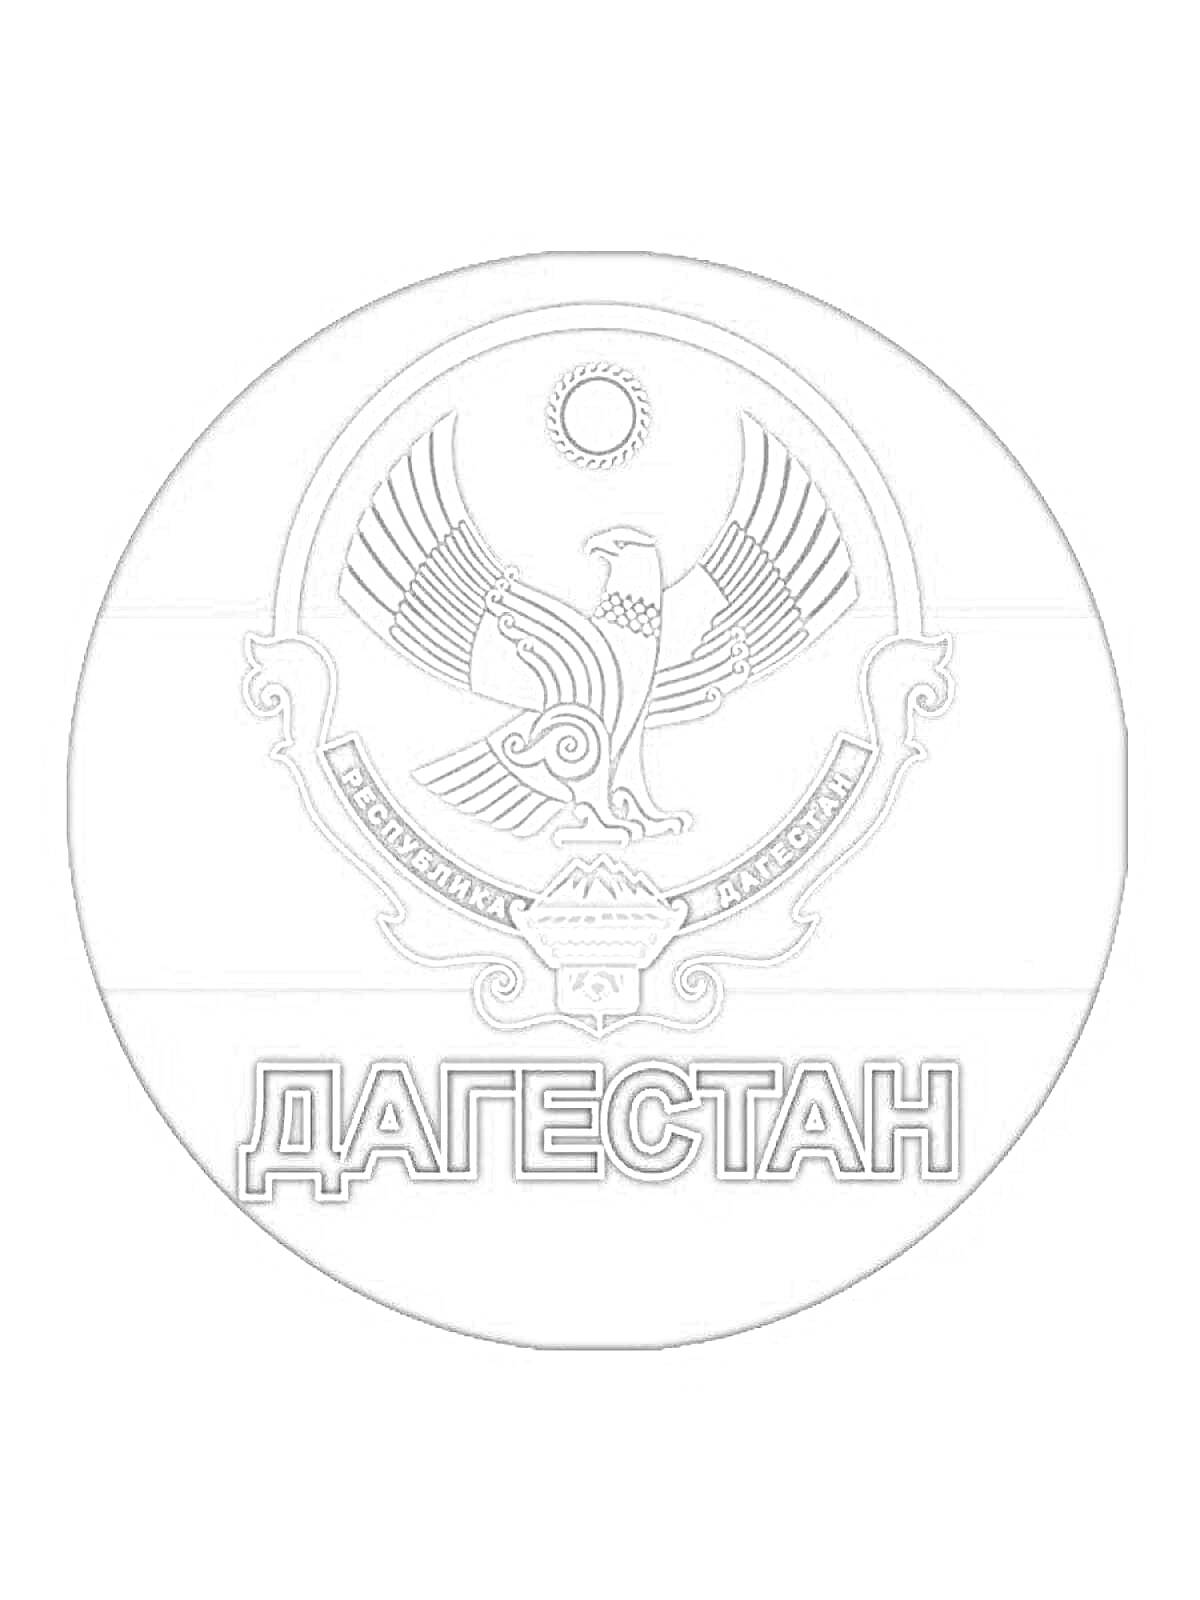 Раскраска Герб Дагестана с символами орла, солнца, полумесяца и надписью 